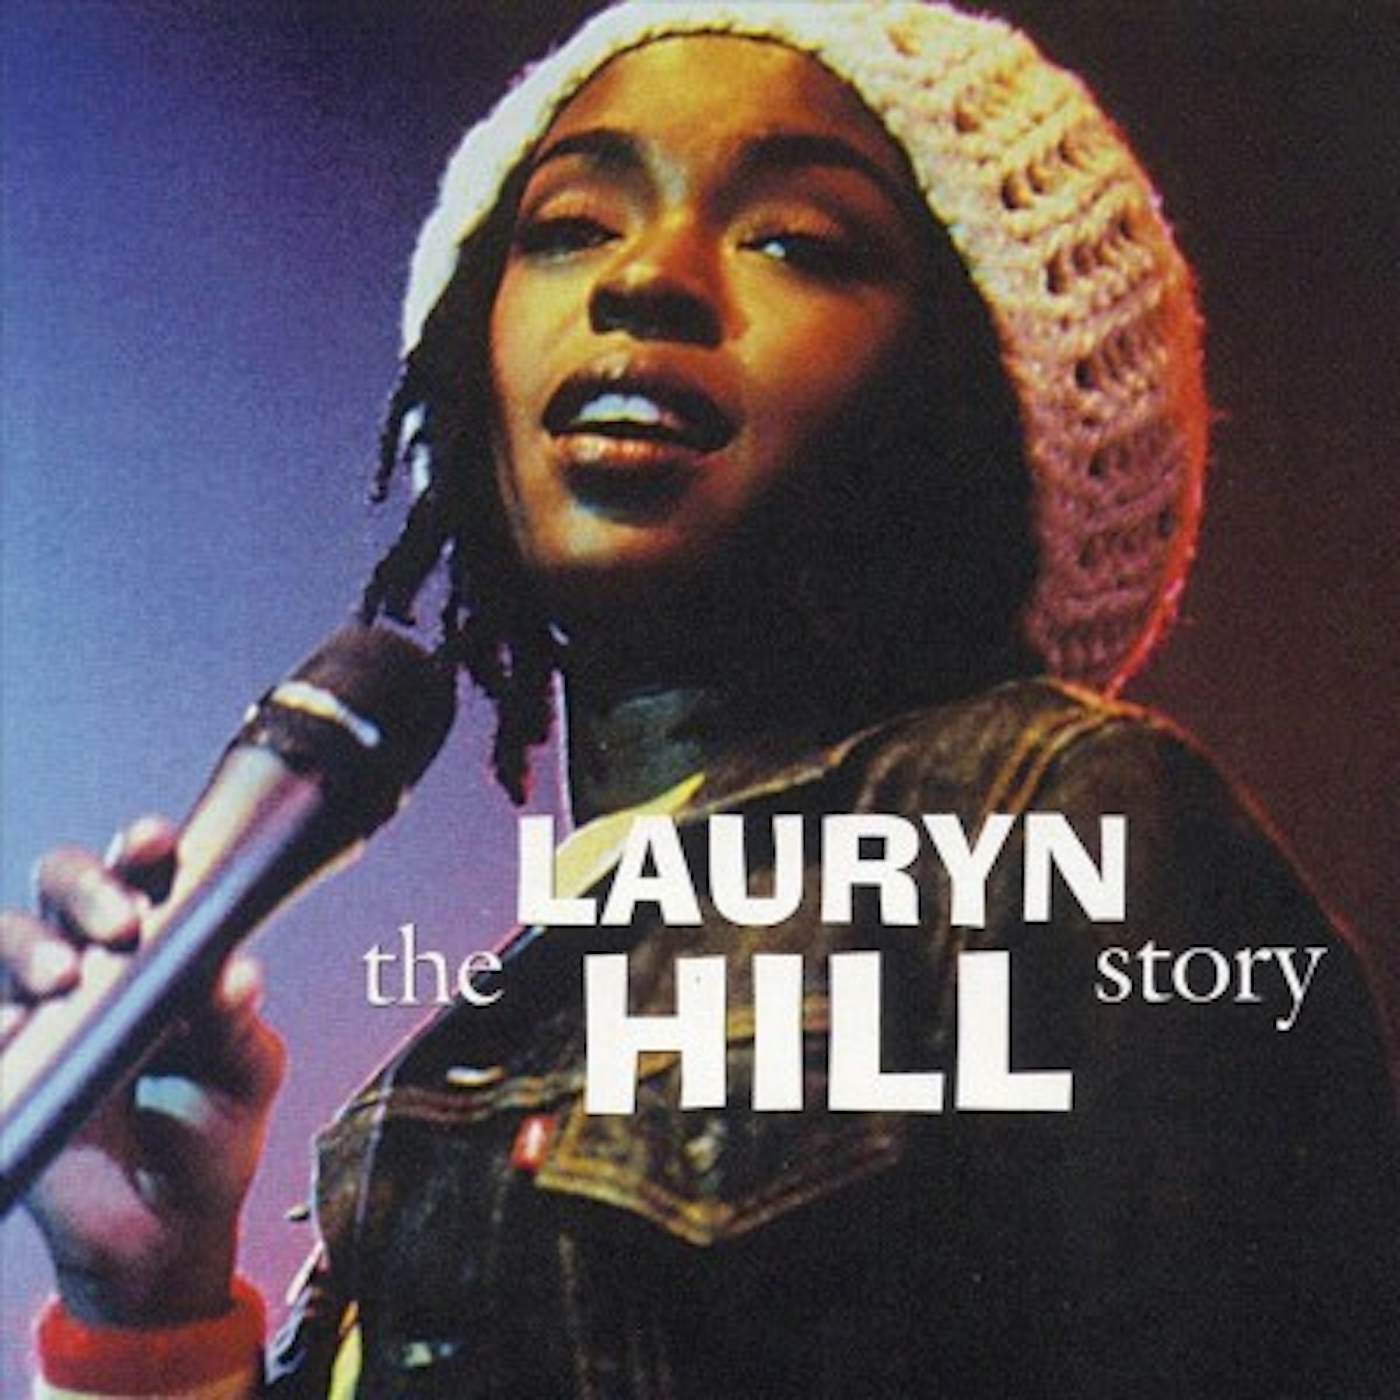 Lauryn Hill Story CD